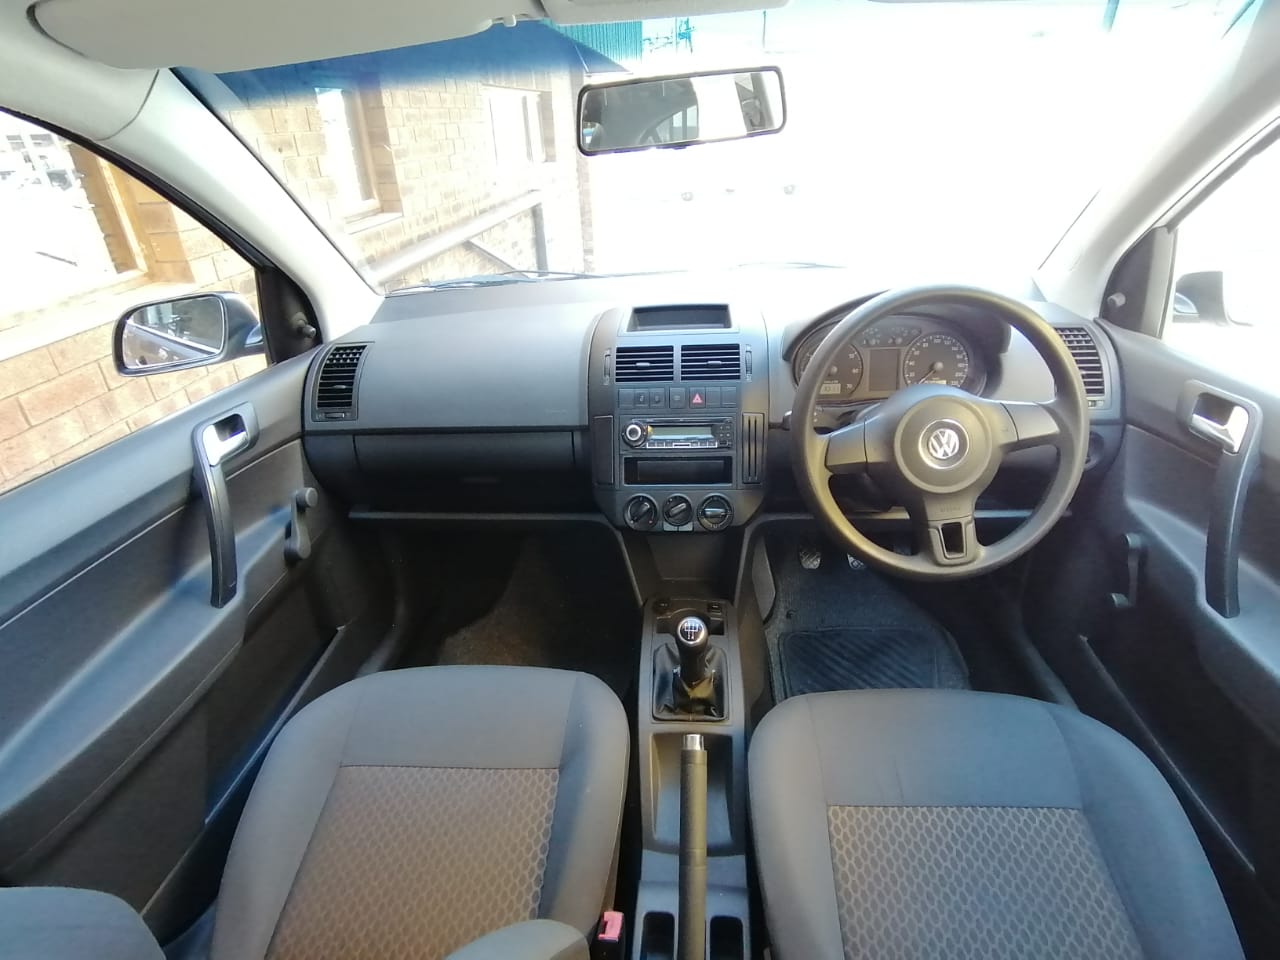 2010 VW Polo Vivo sedan